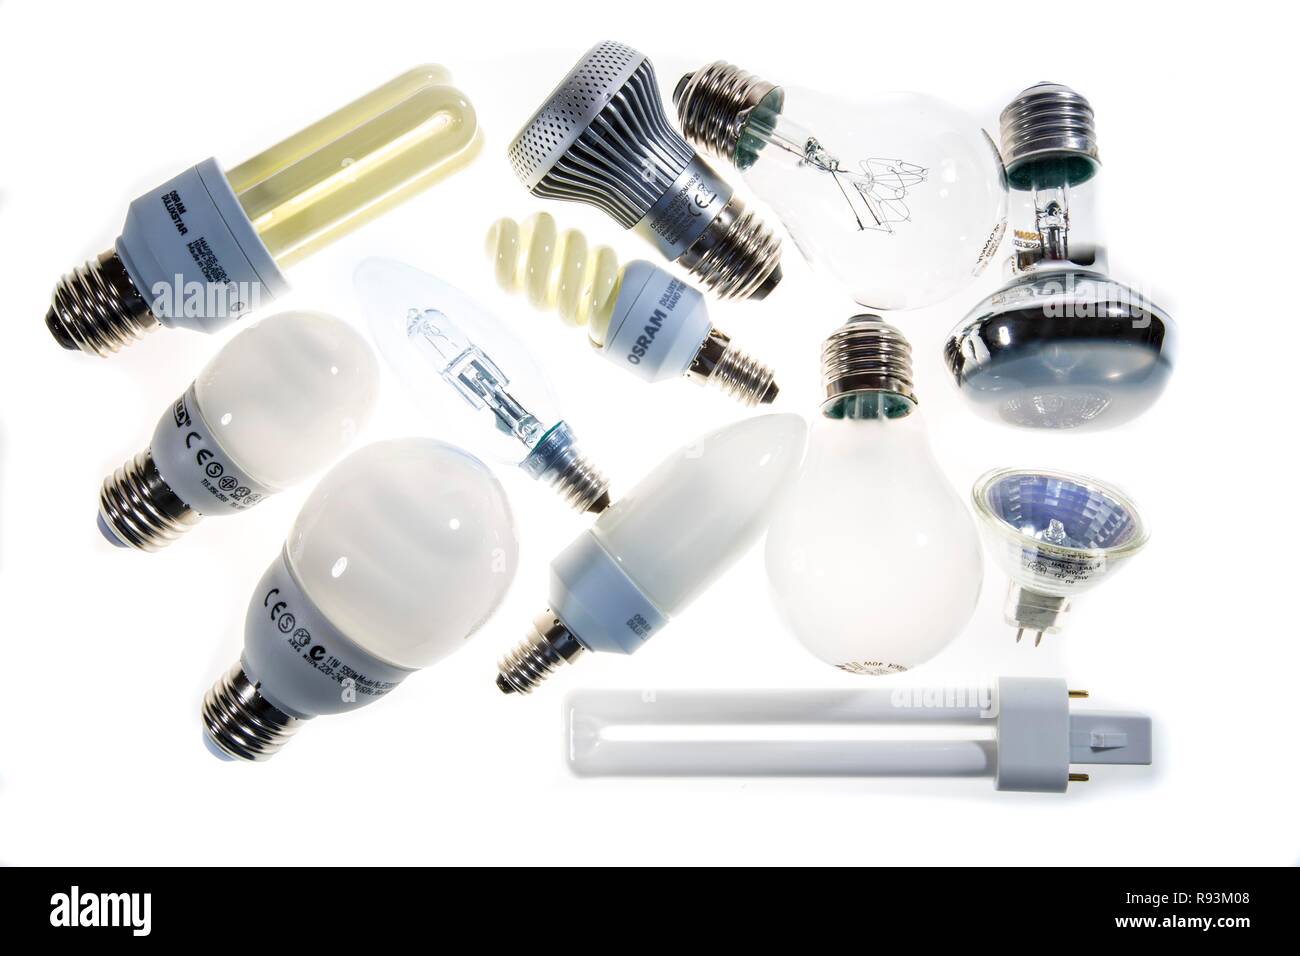 Verschiedene Lampen, Glühbirnen, Energiesparlampen und LED-Lampen Stockfoto